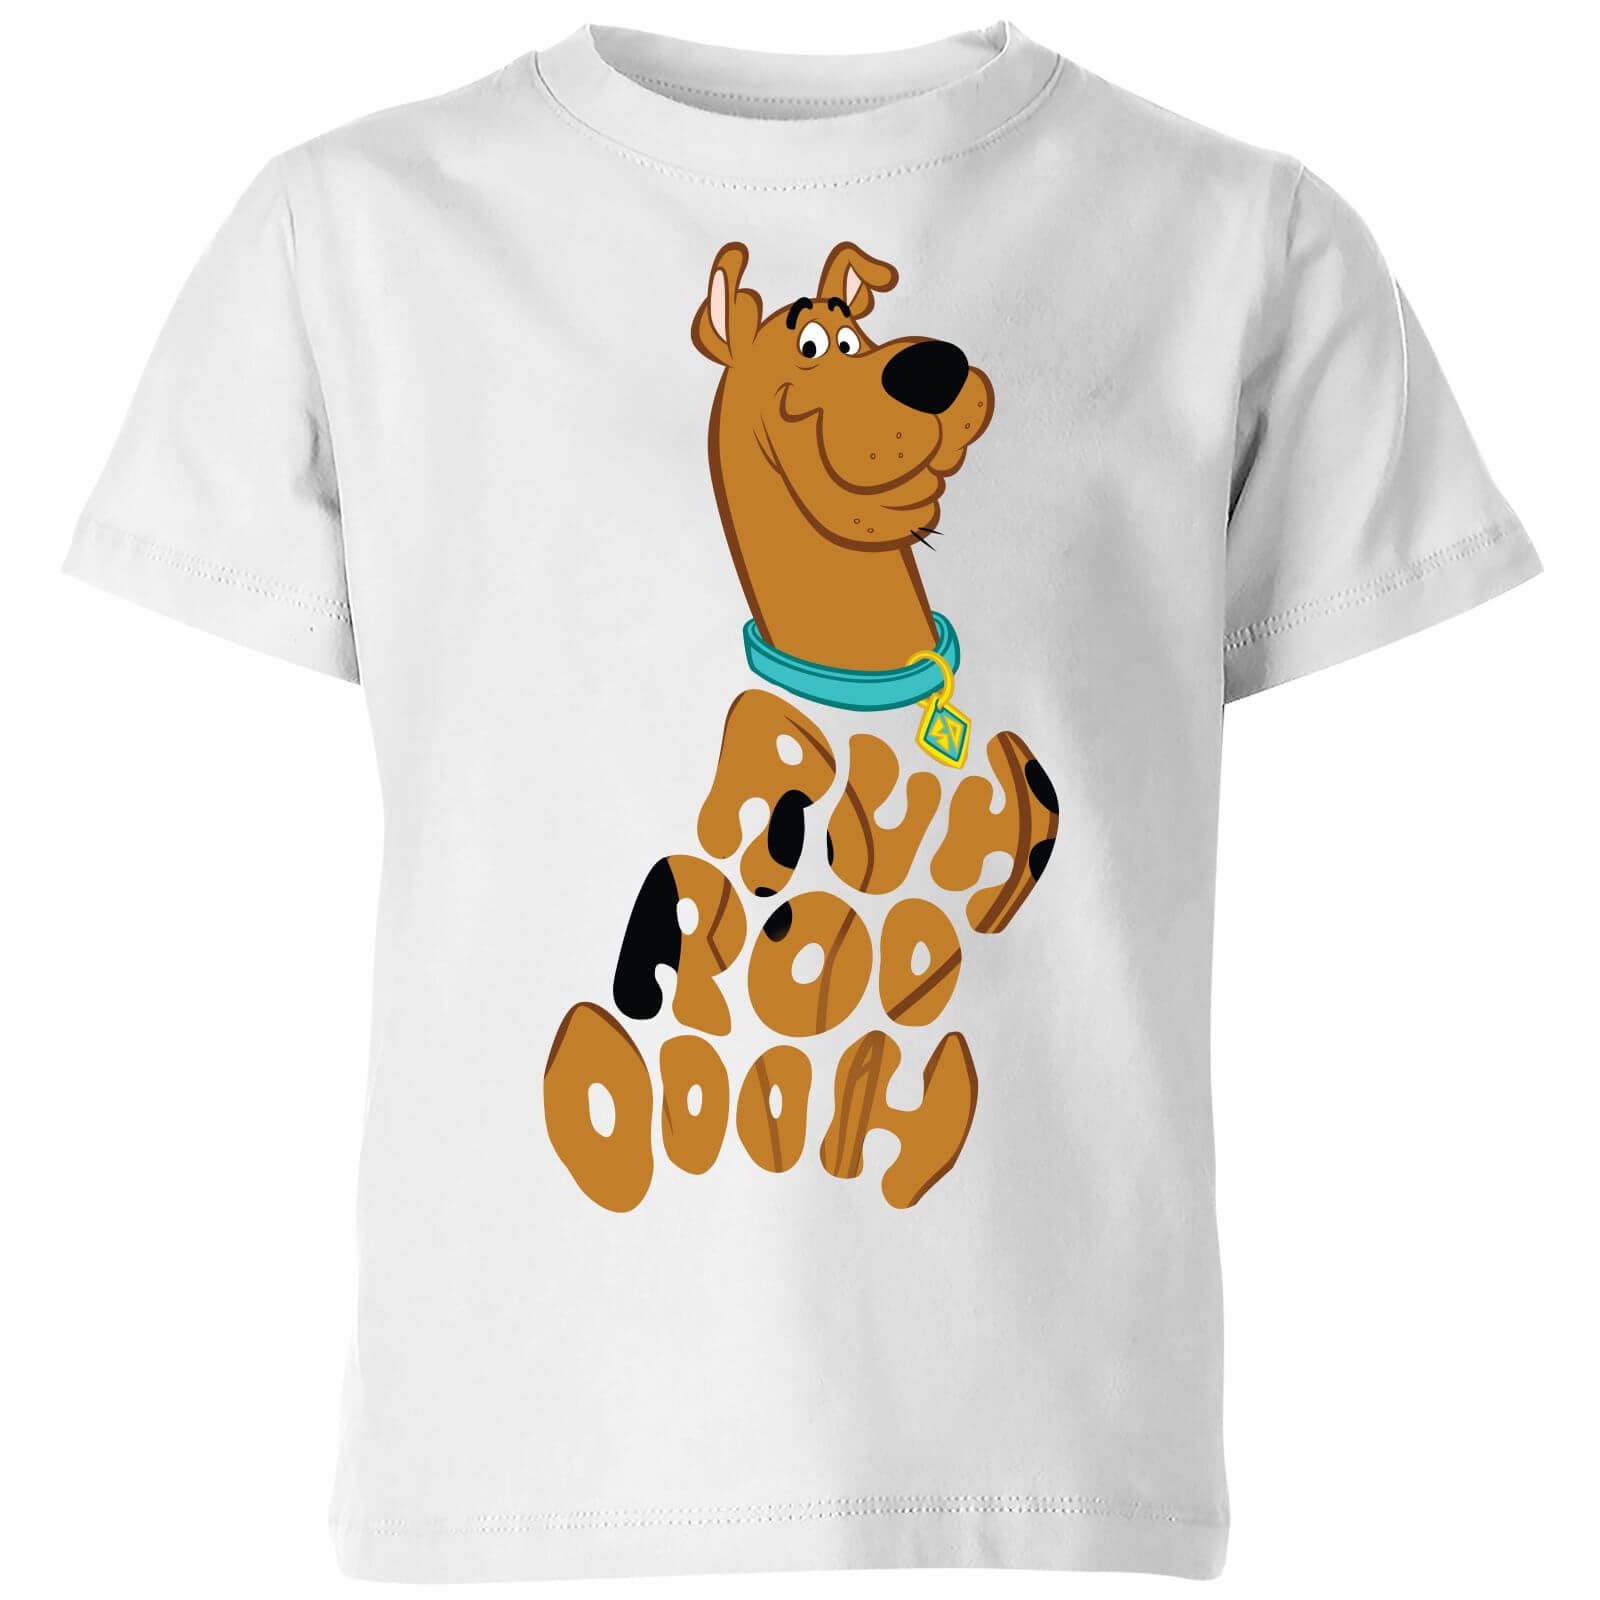 Scooby Doo RUHROOOOOH Kids' T-Shirt - White - 3-4 Years